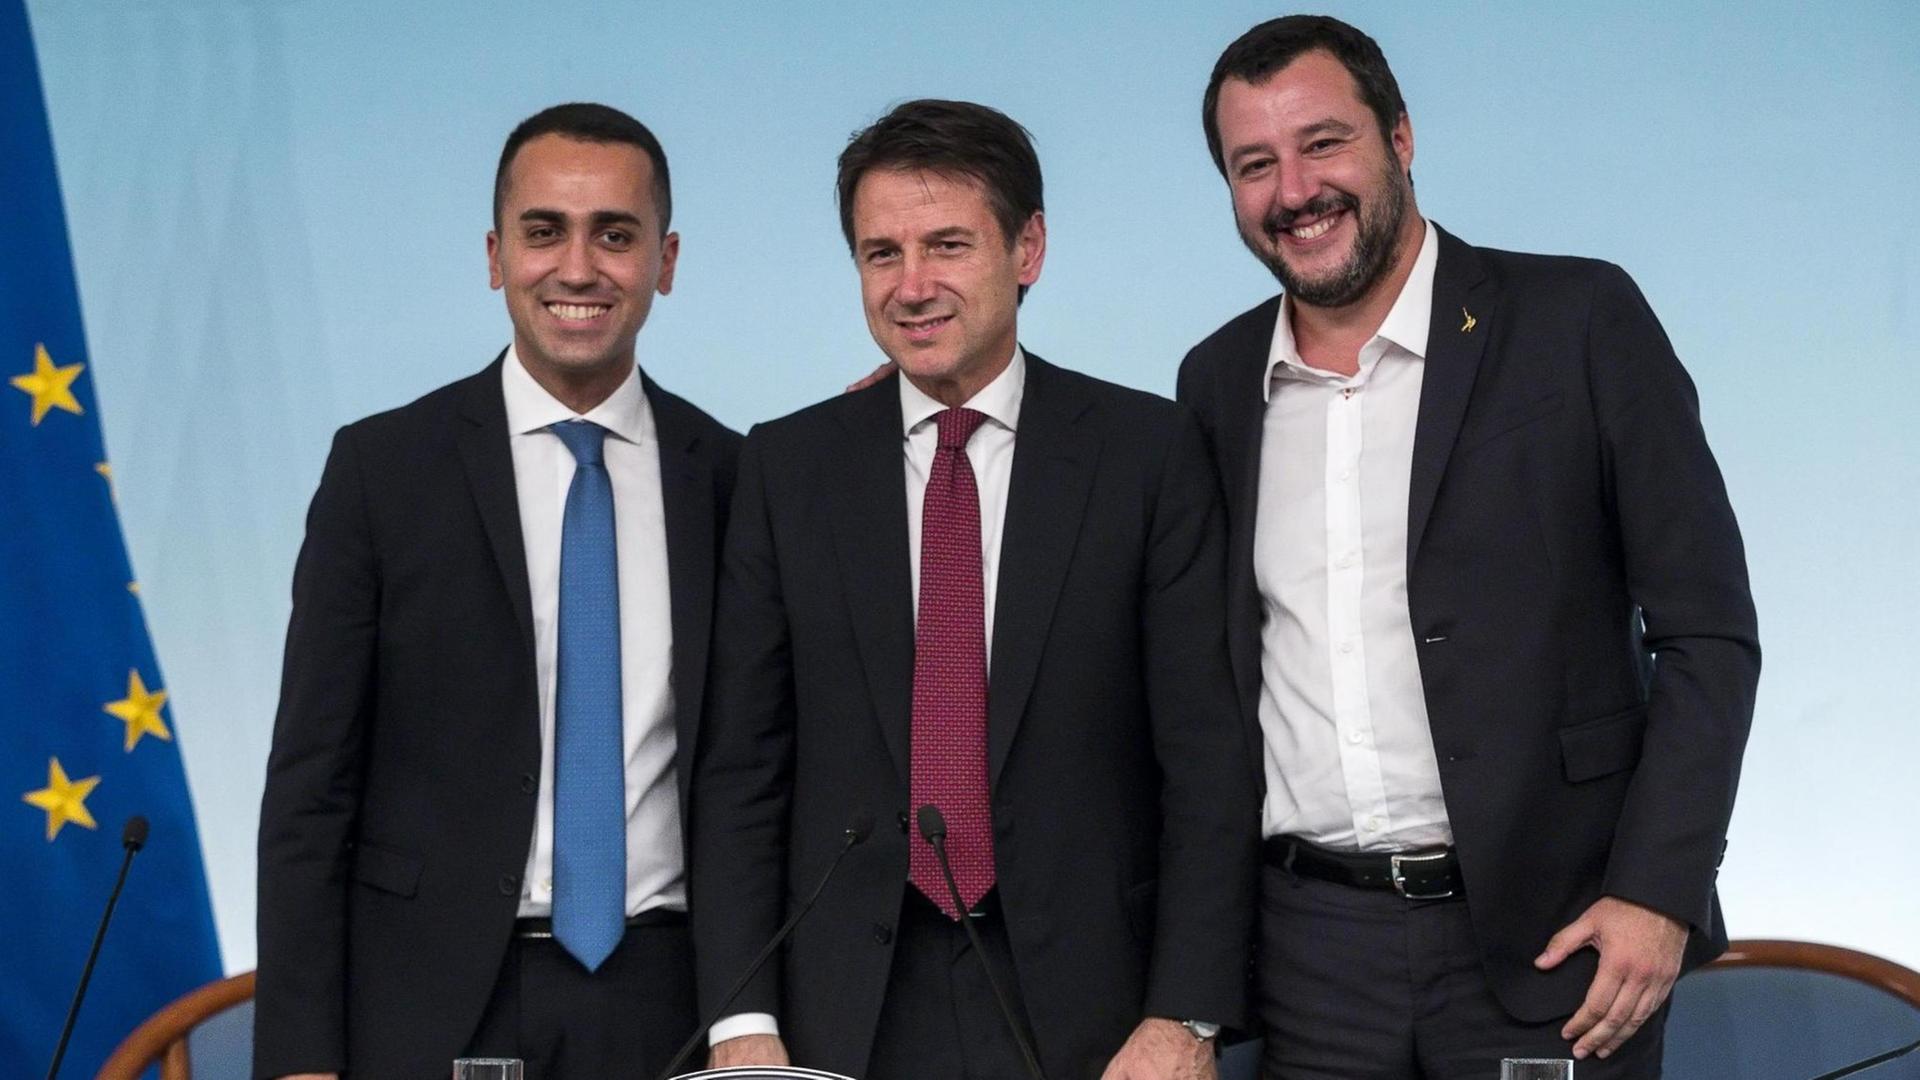 Luigi Di Maio (l-r), stellvertretender Ministerpräsident von Italien, Giuseppe Conte, Ministerpräsident von Italien, und Matteo Salvini, Innenminister von Italien, bei einer Pressekonferenz im Palazzo Chigi in Rom.